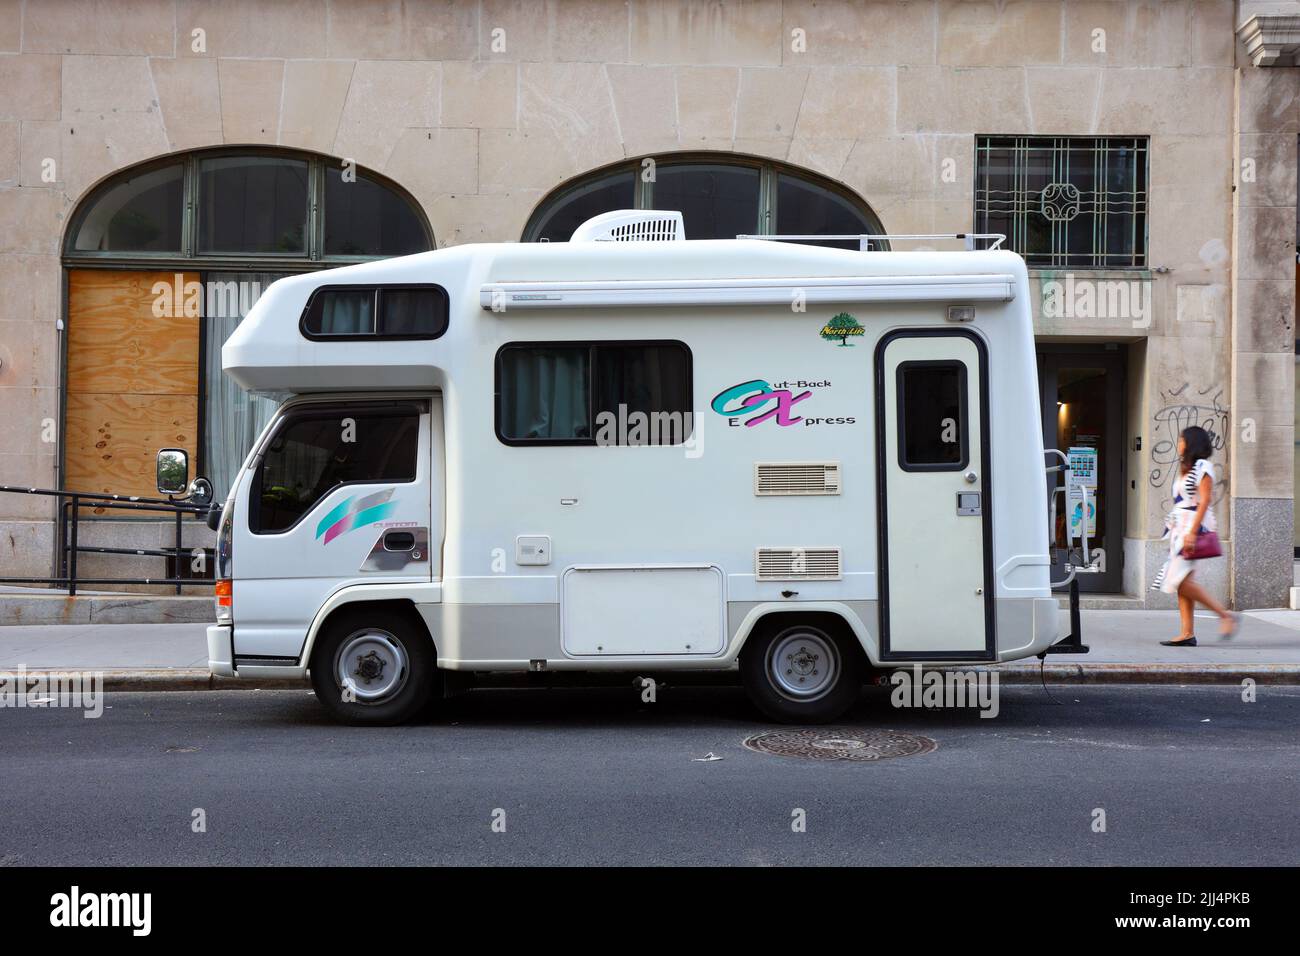 Ein Isuzu Elf Outback Express japanisches Wohnmobil mit Camper und Wohnmobil, das auf einer Straße geparkt ist. Stockfoto